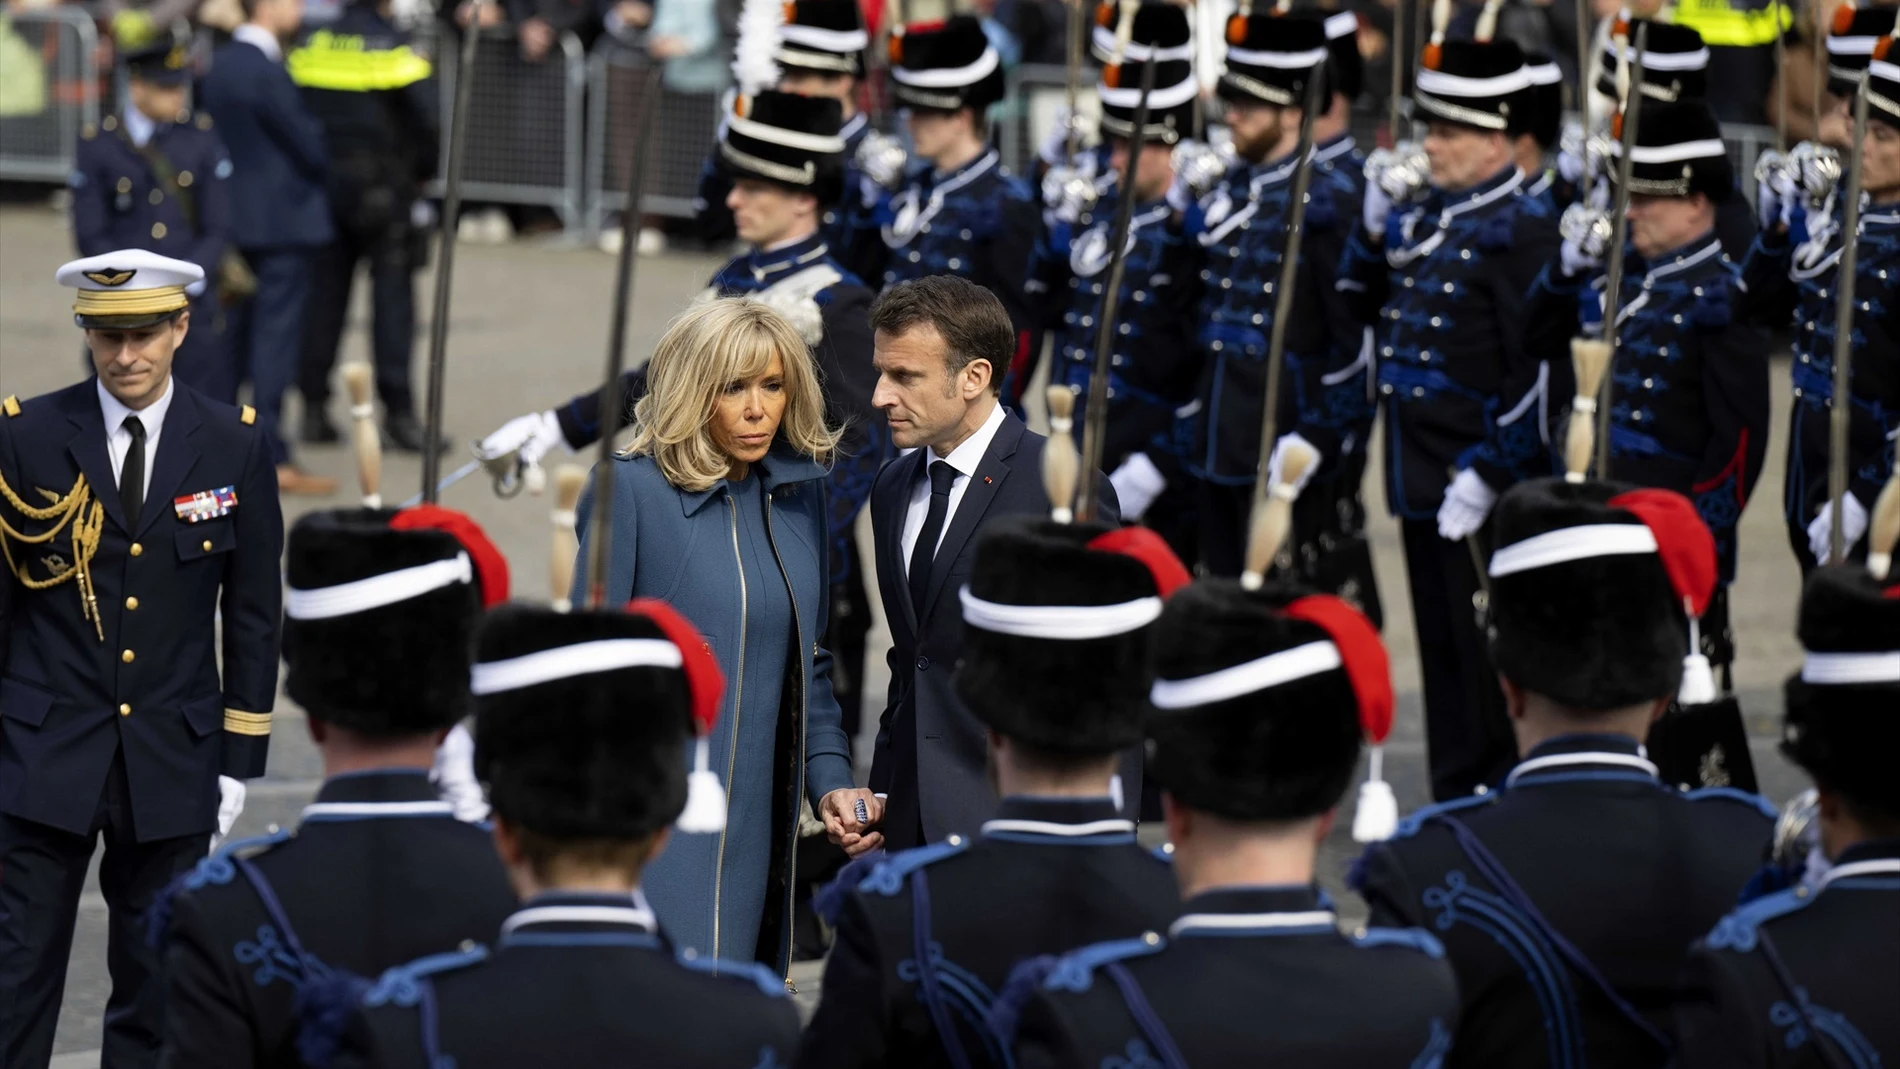 El presidente francés Emmanuel Macron y su esposa Brigitte Macron colocaron una ofrenda floral en el monumento nacional en la Plaza Dam en presencia del primer Ministro Rutte y el alcalde Halsema como parte de una visita de estado a los países Bajos